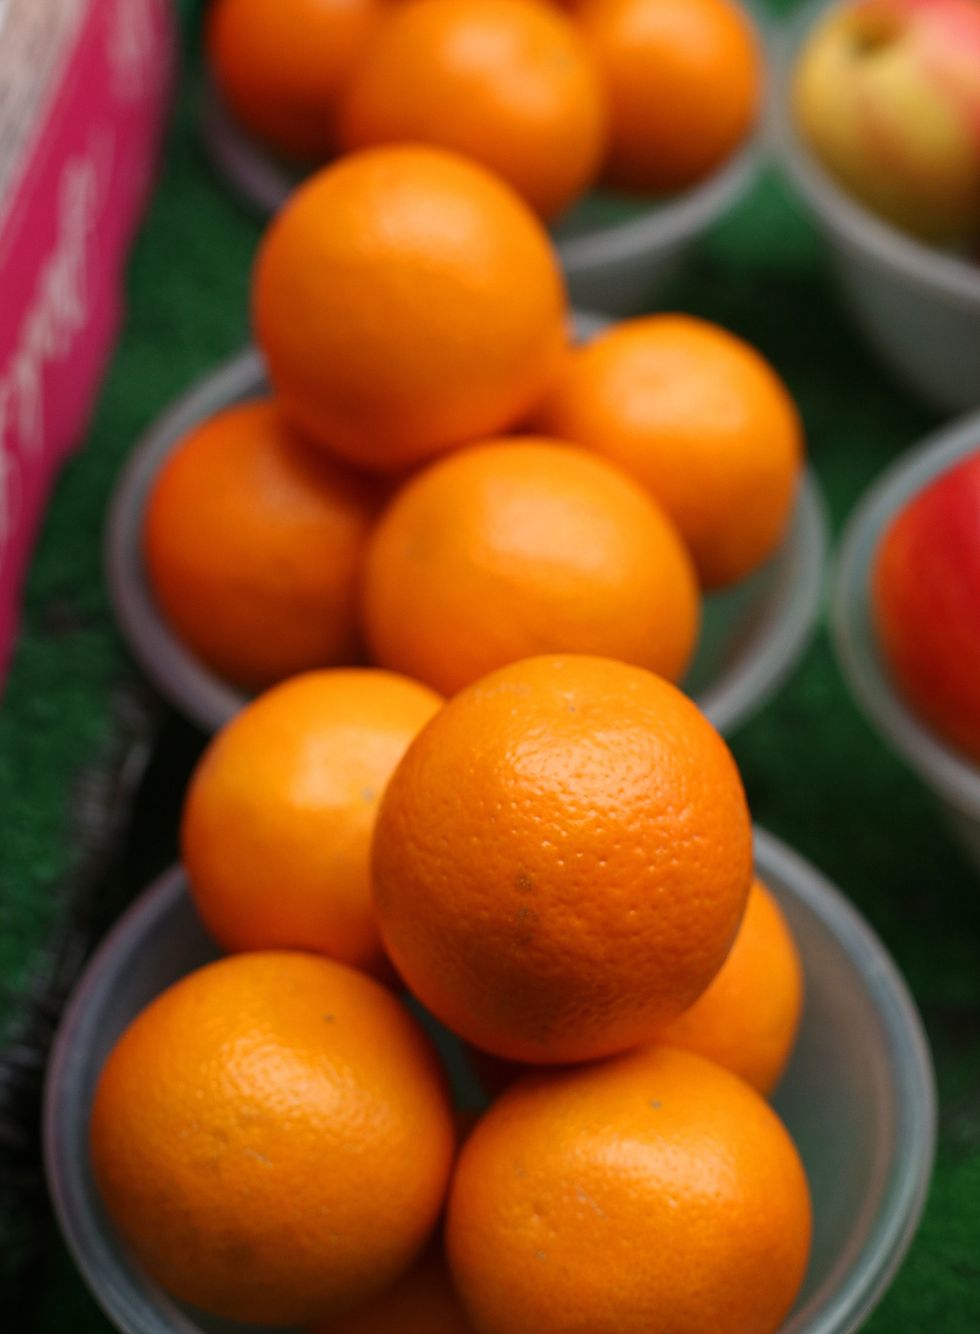 Oranges in bowl